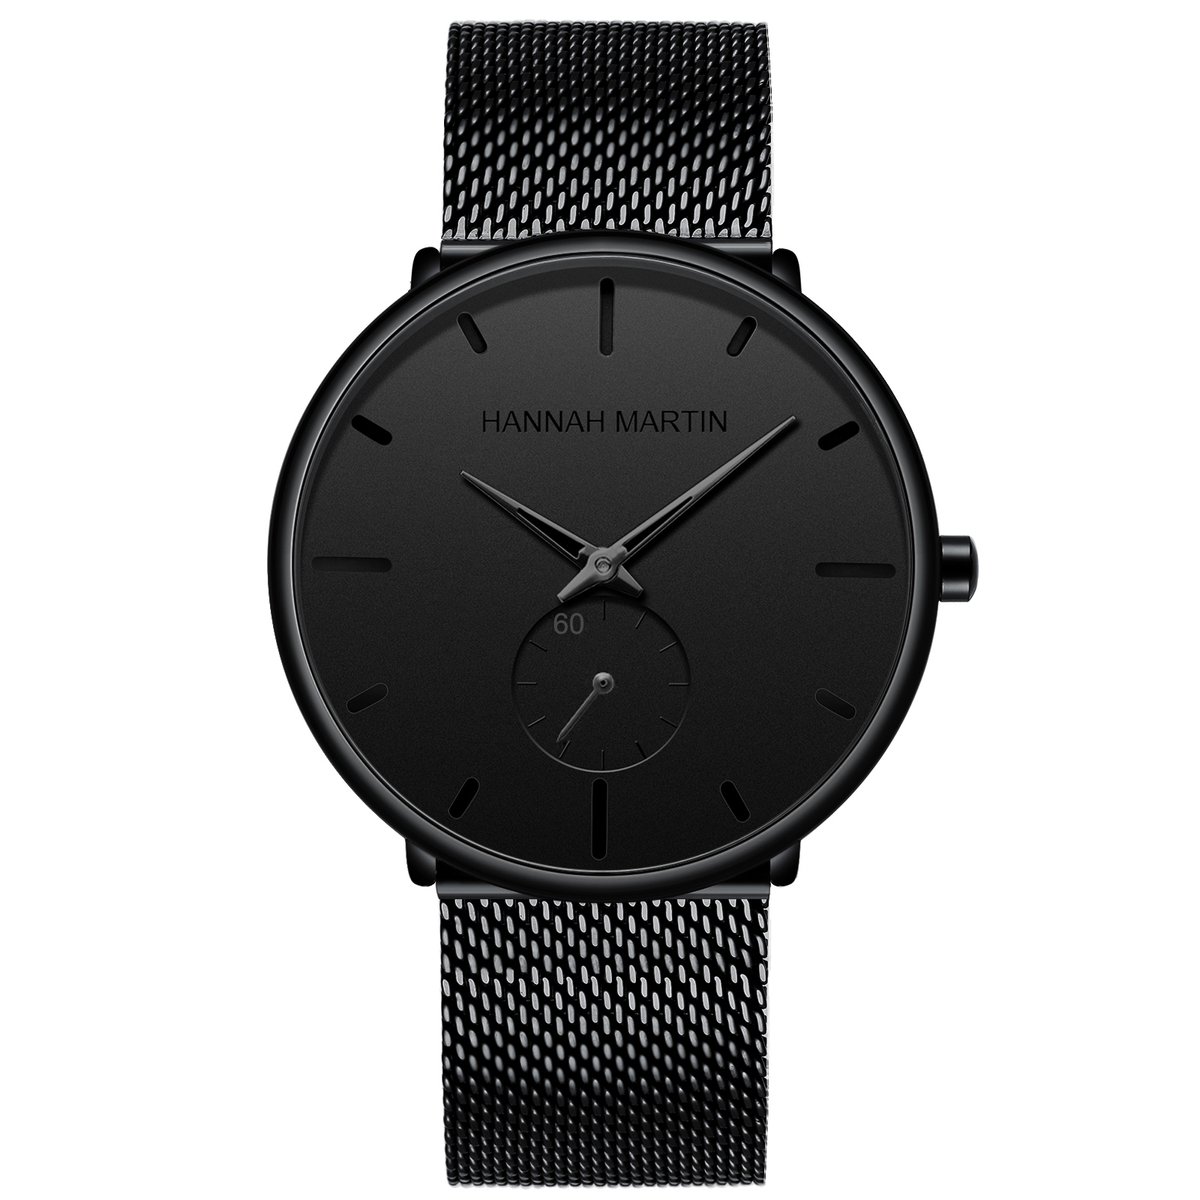 HANNAH MARTIN horloge met zwarte stalen polsband, zwarte wijzerplaat, zwarte horlogekast en zwarte wijzers voor heren met stijl ( model 100G HH )